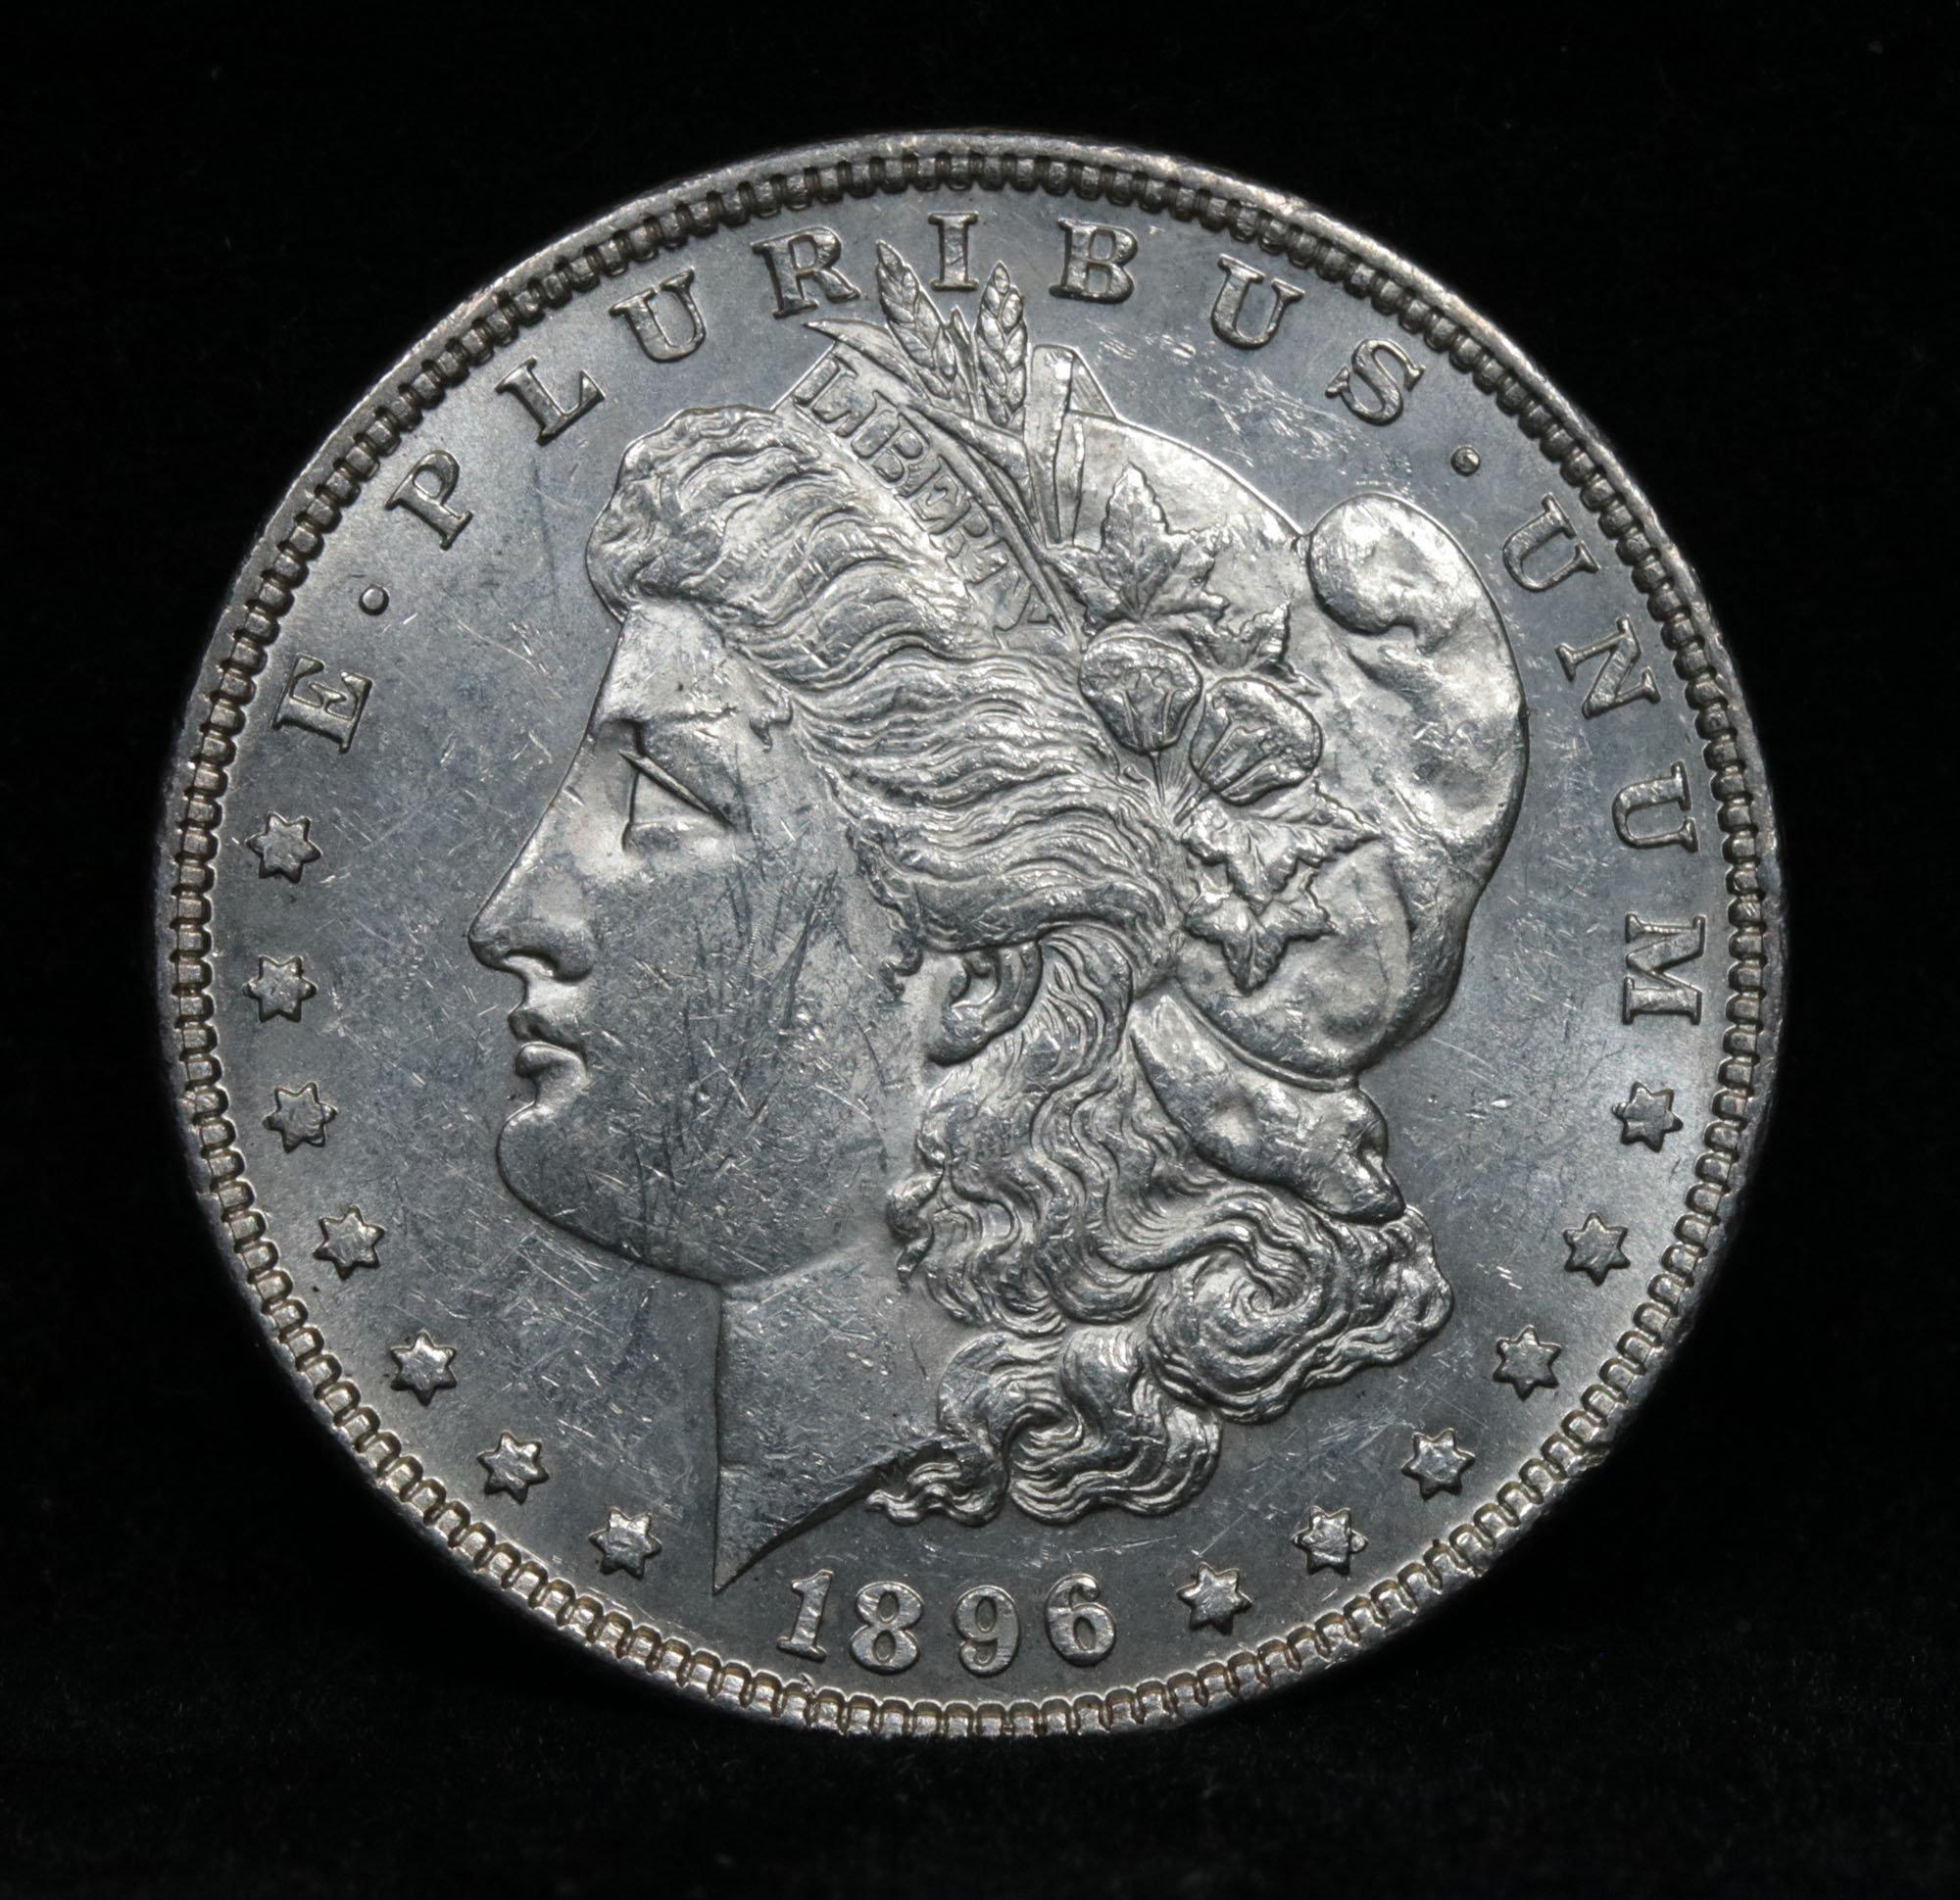 1896-p Morgan Dollar $1 Grades Select Unc PL